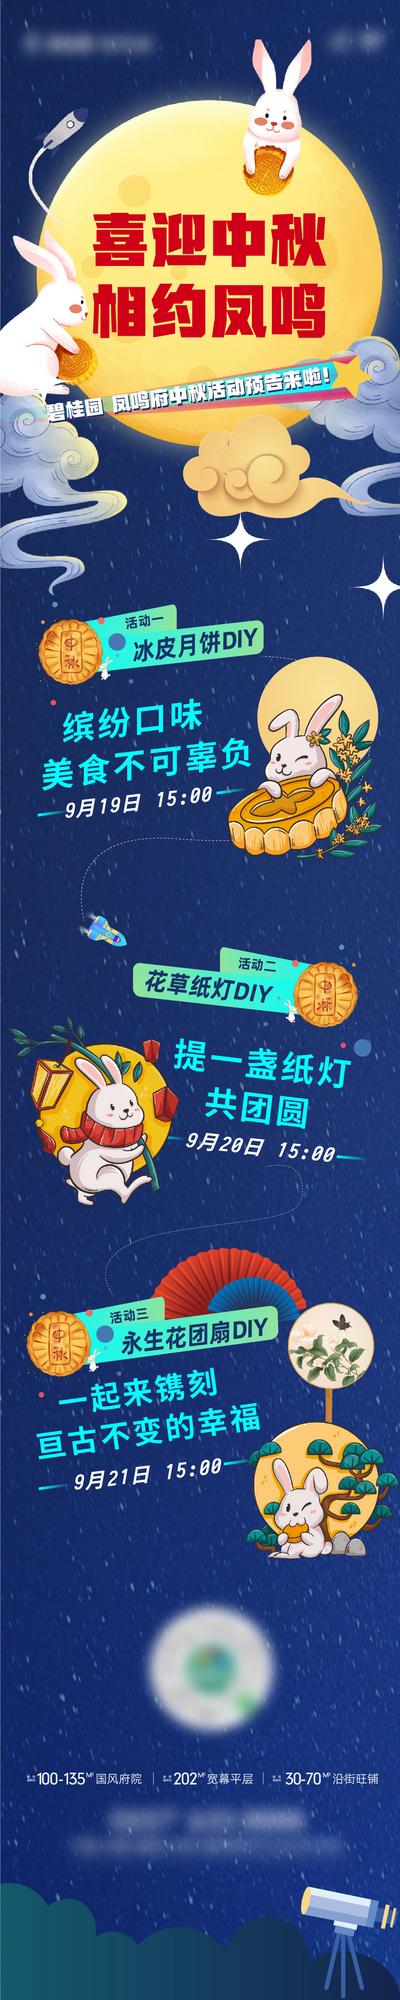 南门网 海报 中国传统节日 中秋 插画 玉兔 diy 月饼 团扇